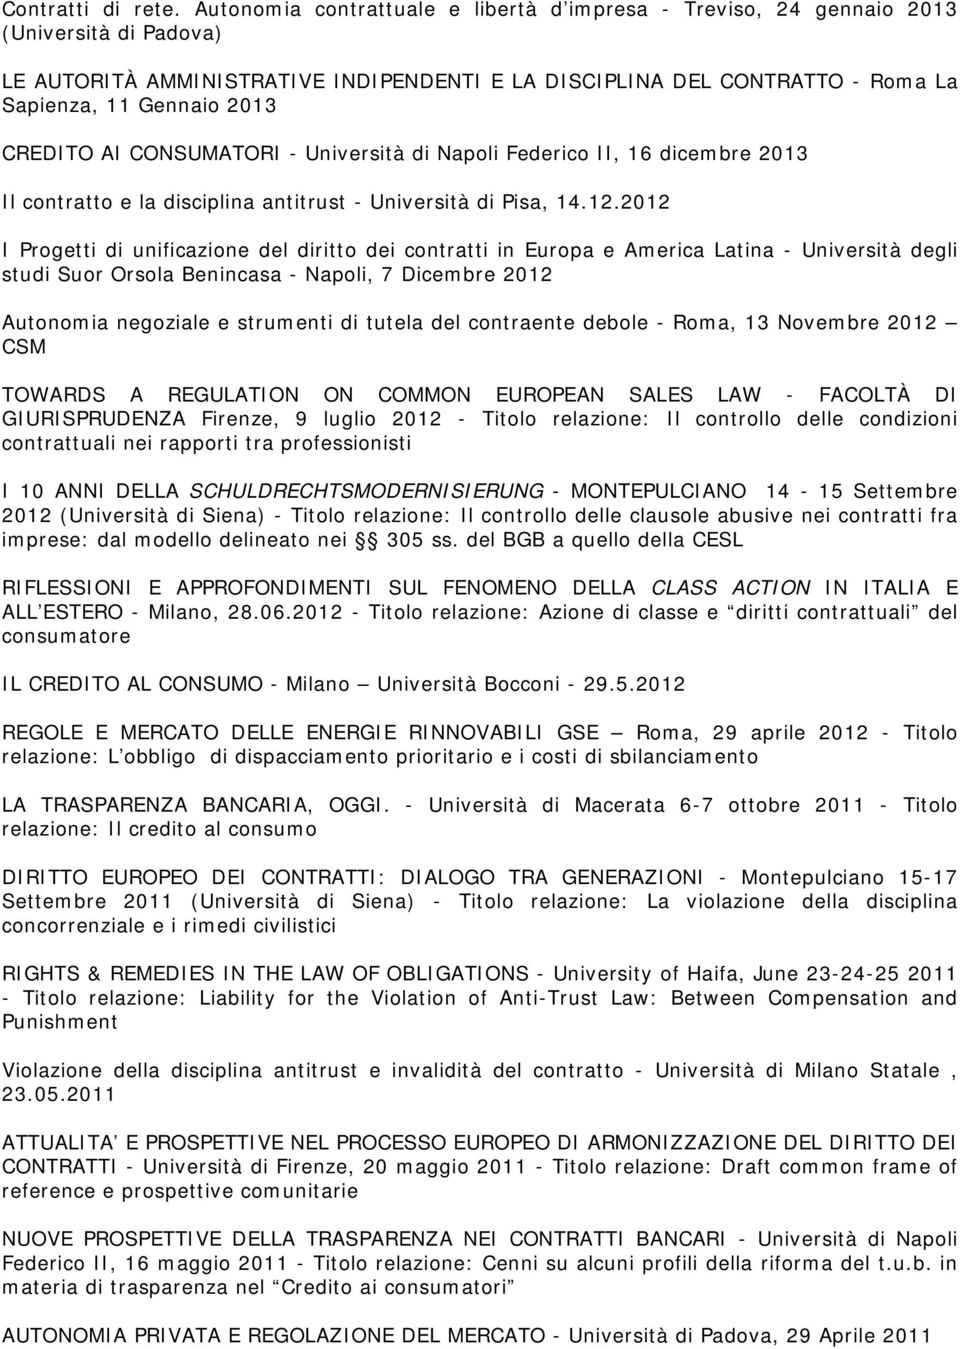 CREDITO AI CONSUMATORI - Università di Napoli Federico II, 16 dicembre 2013 Il contratto e la disciplina antitrust - Università di Pisa, 14.12.